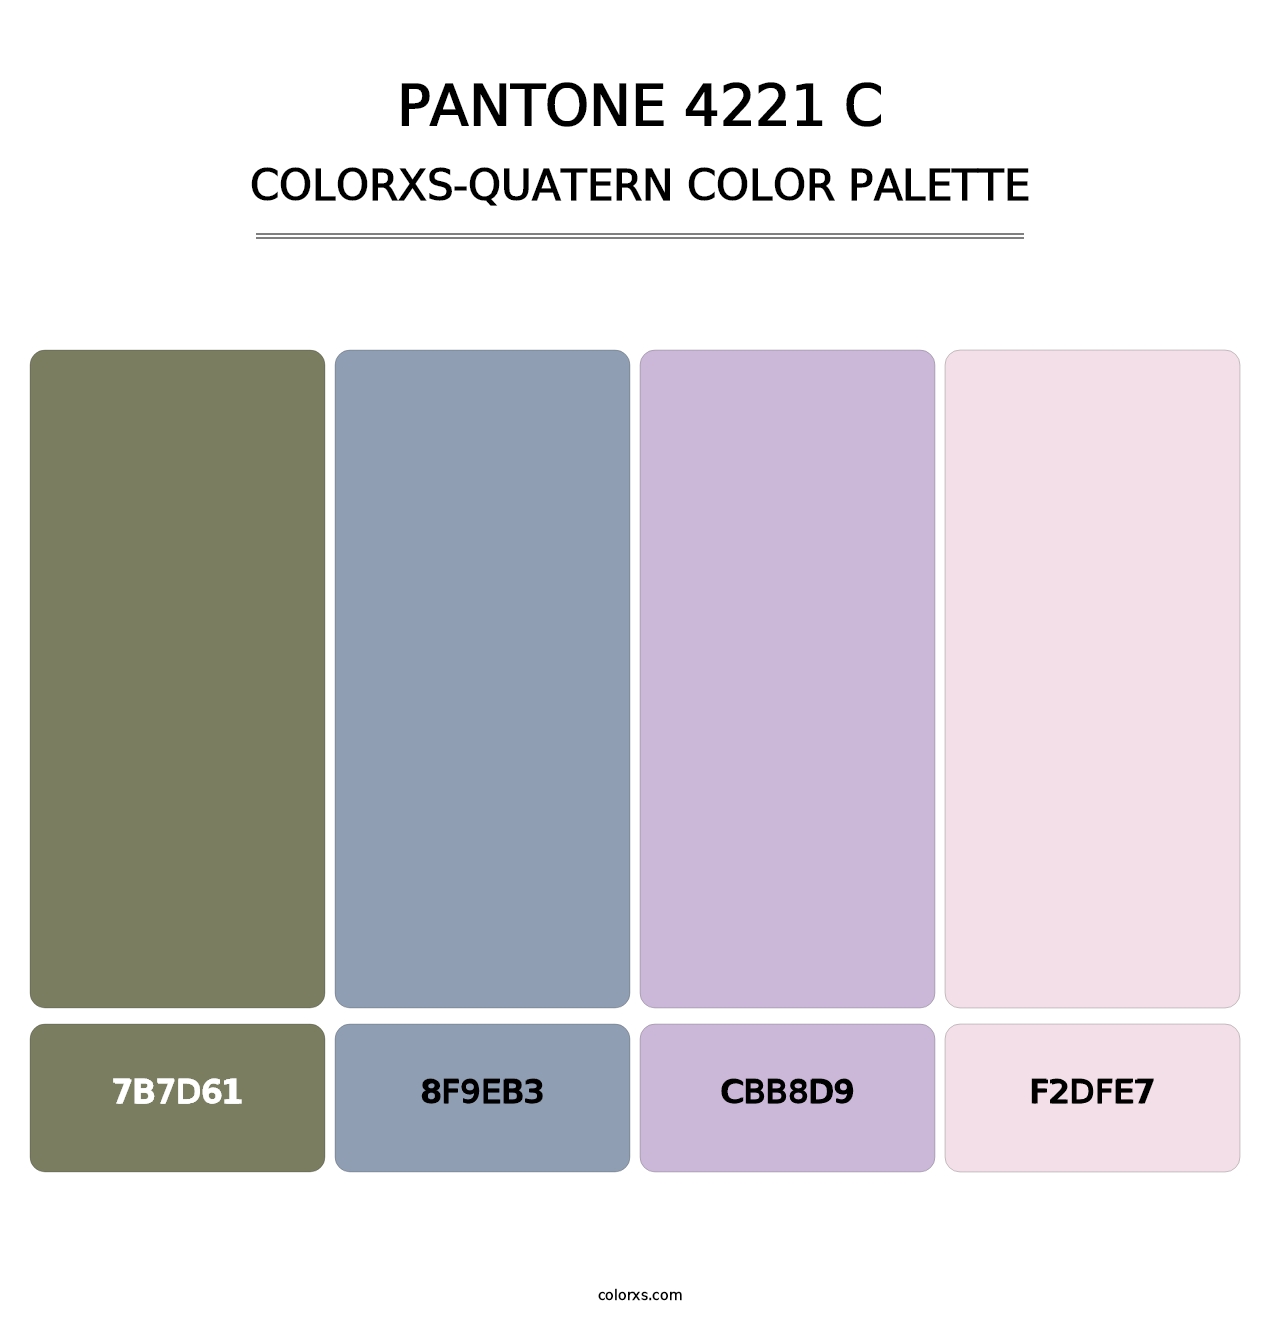 PANTONE 4221 C - Colorxs Quatern Palette